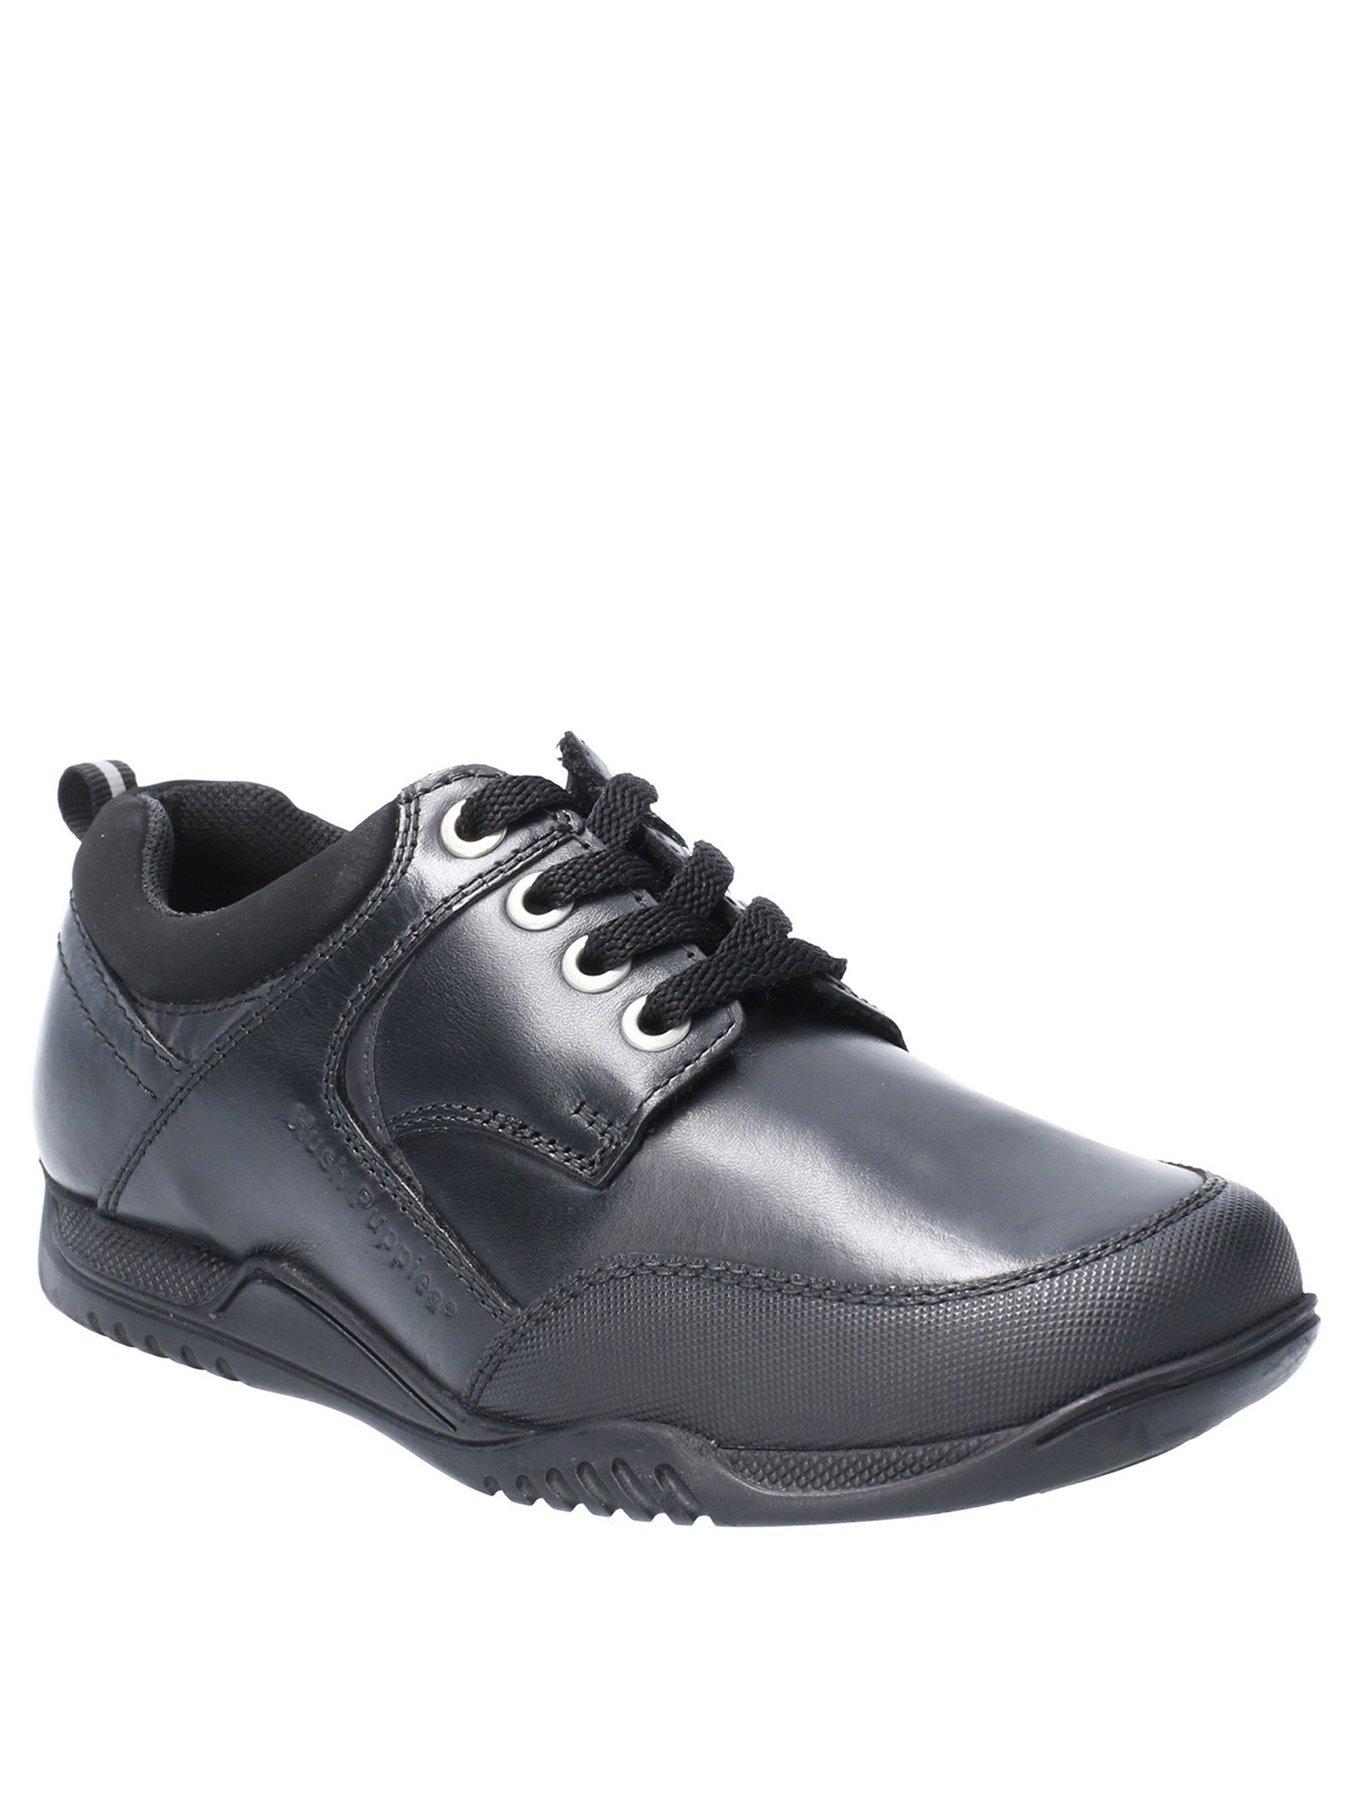 black school shoes size 6.5